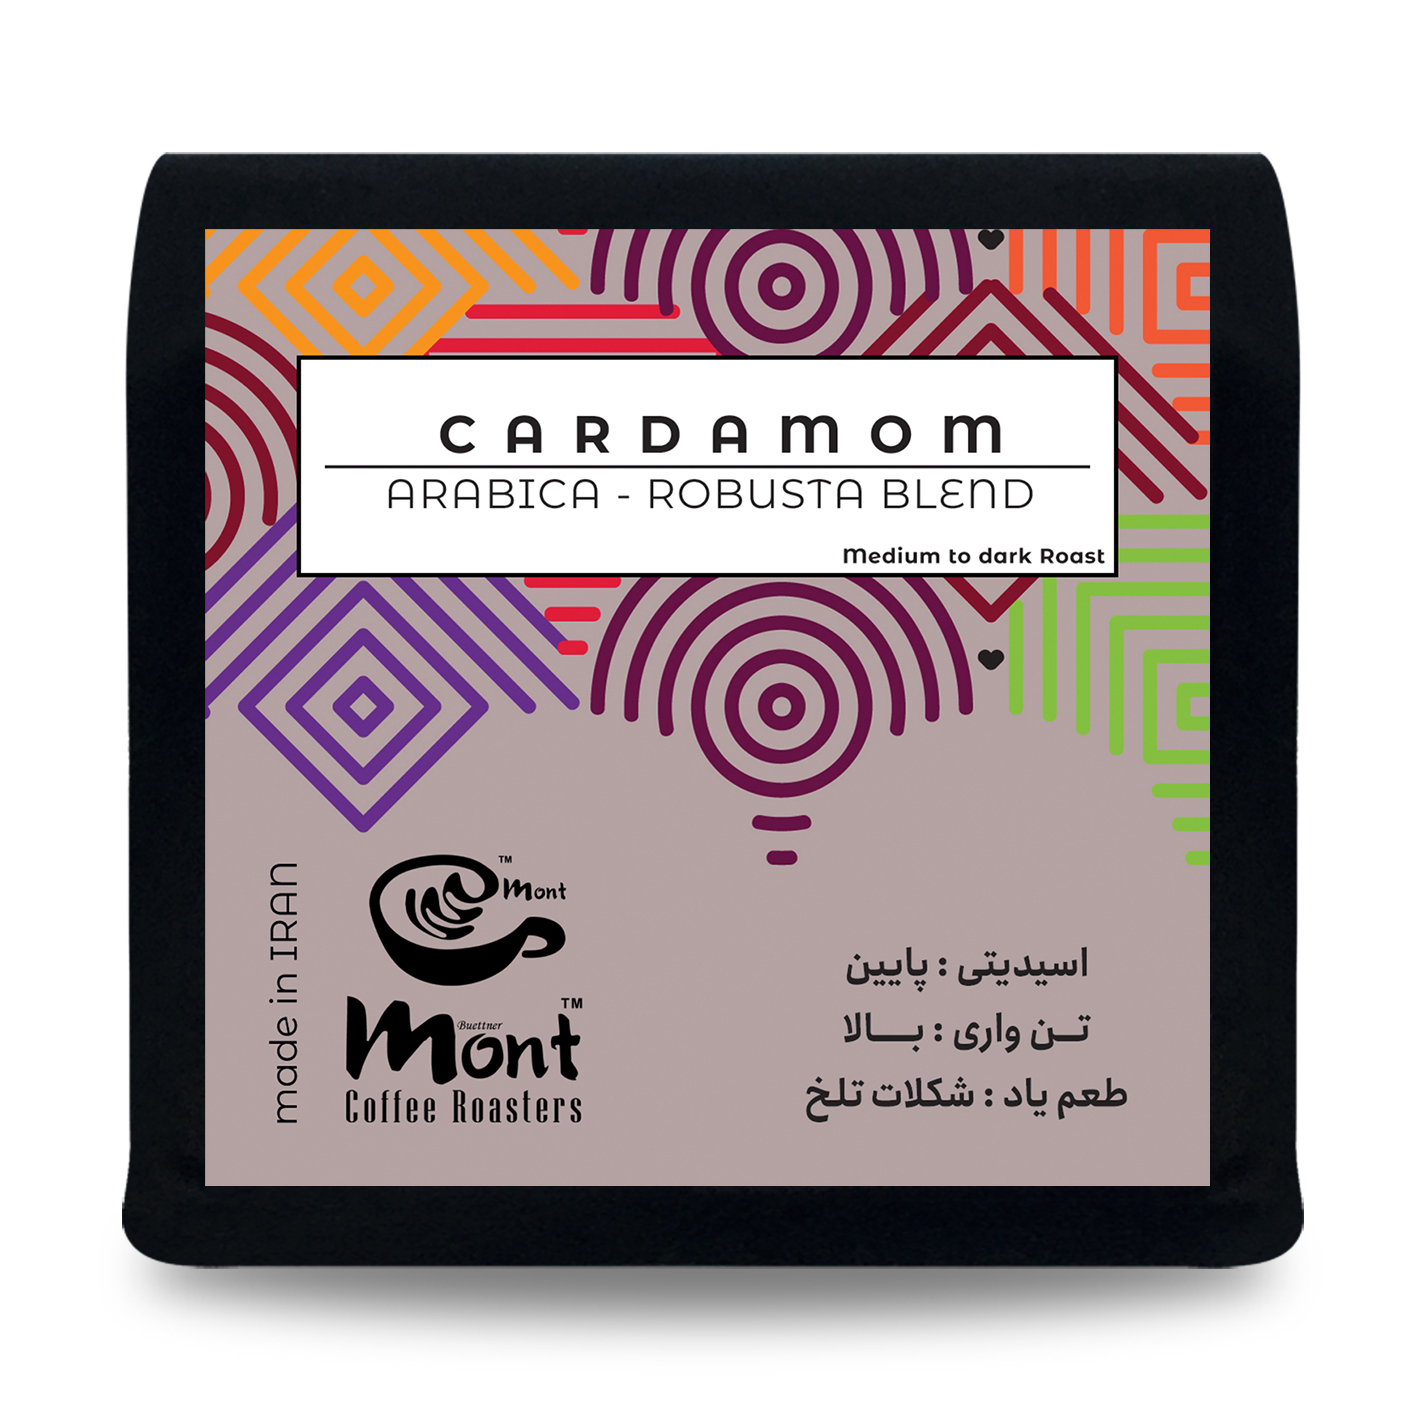 دانه قهوه ترکیبی 80% عربیکا 20% ربوستا مونت کارداموم - 250 گرم